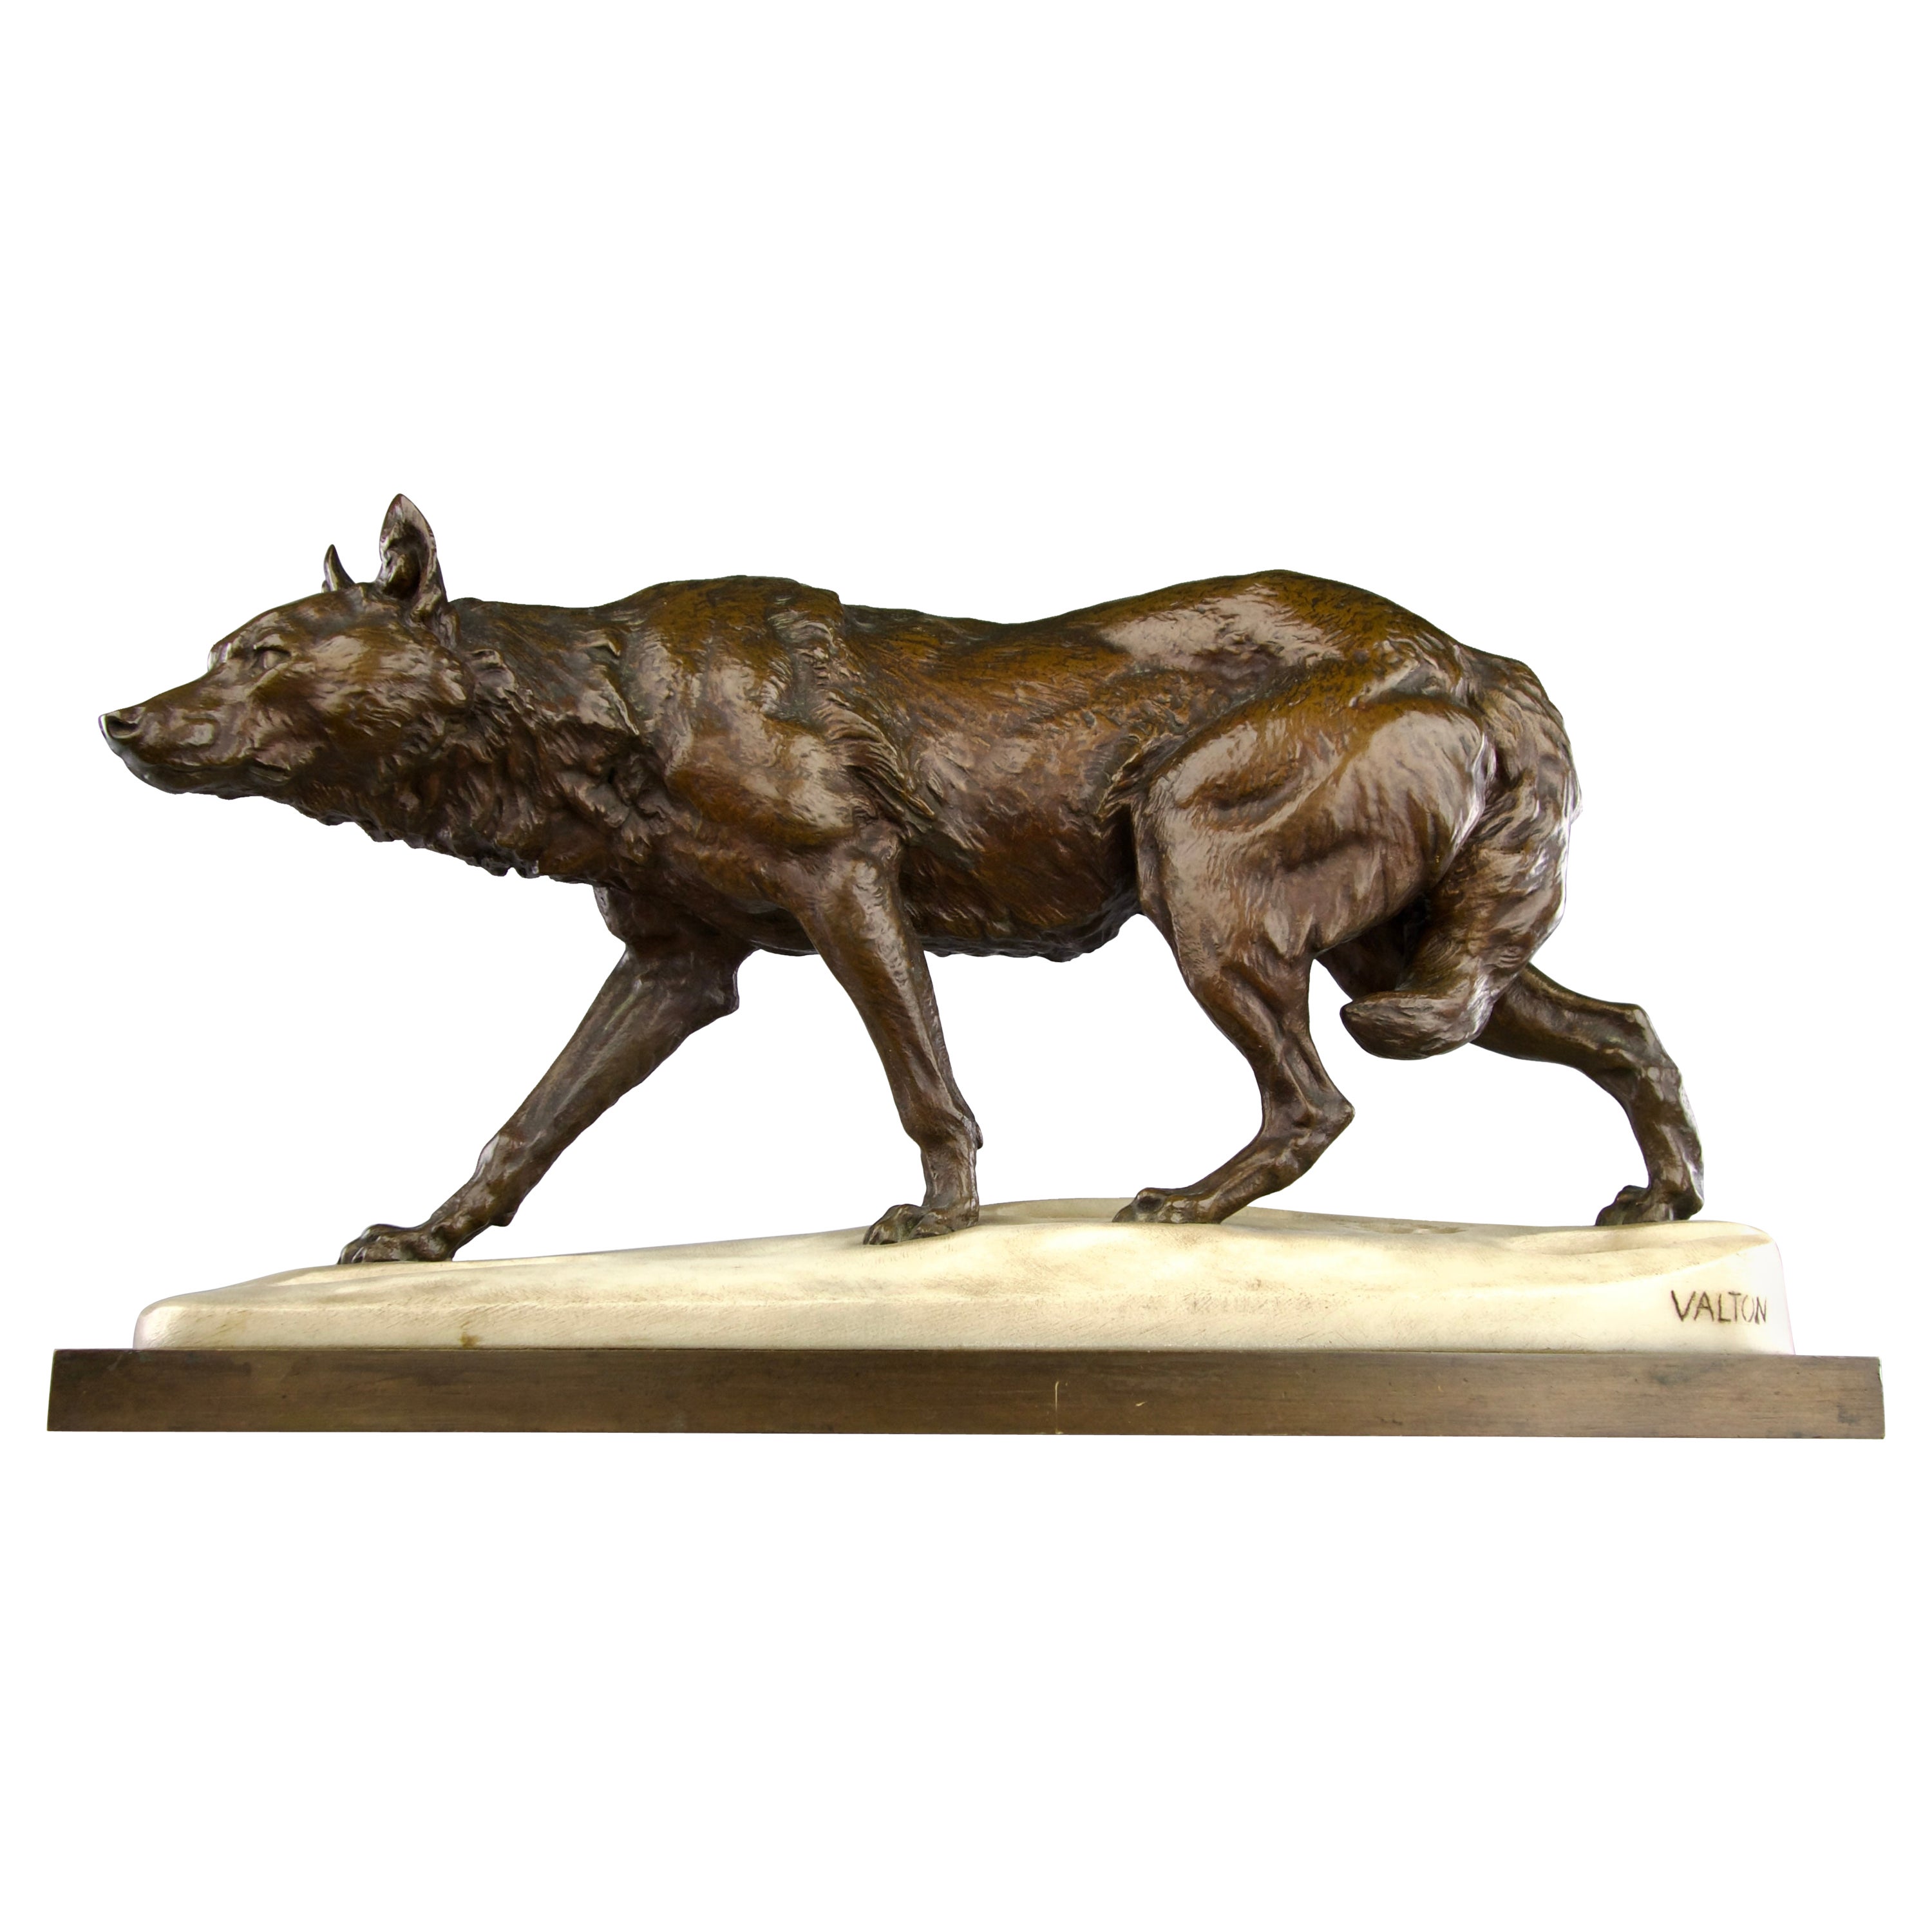 Charles Valton, The Tracking Wolf, Sculpture de la période romantique 19e siècle France